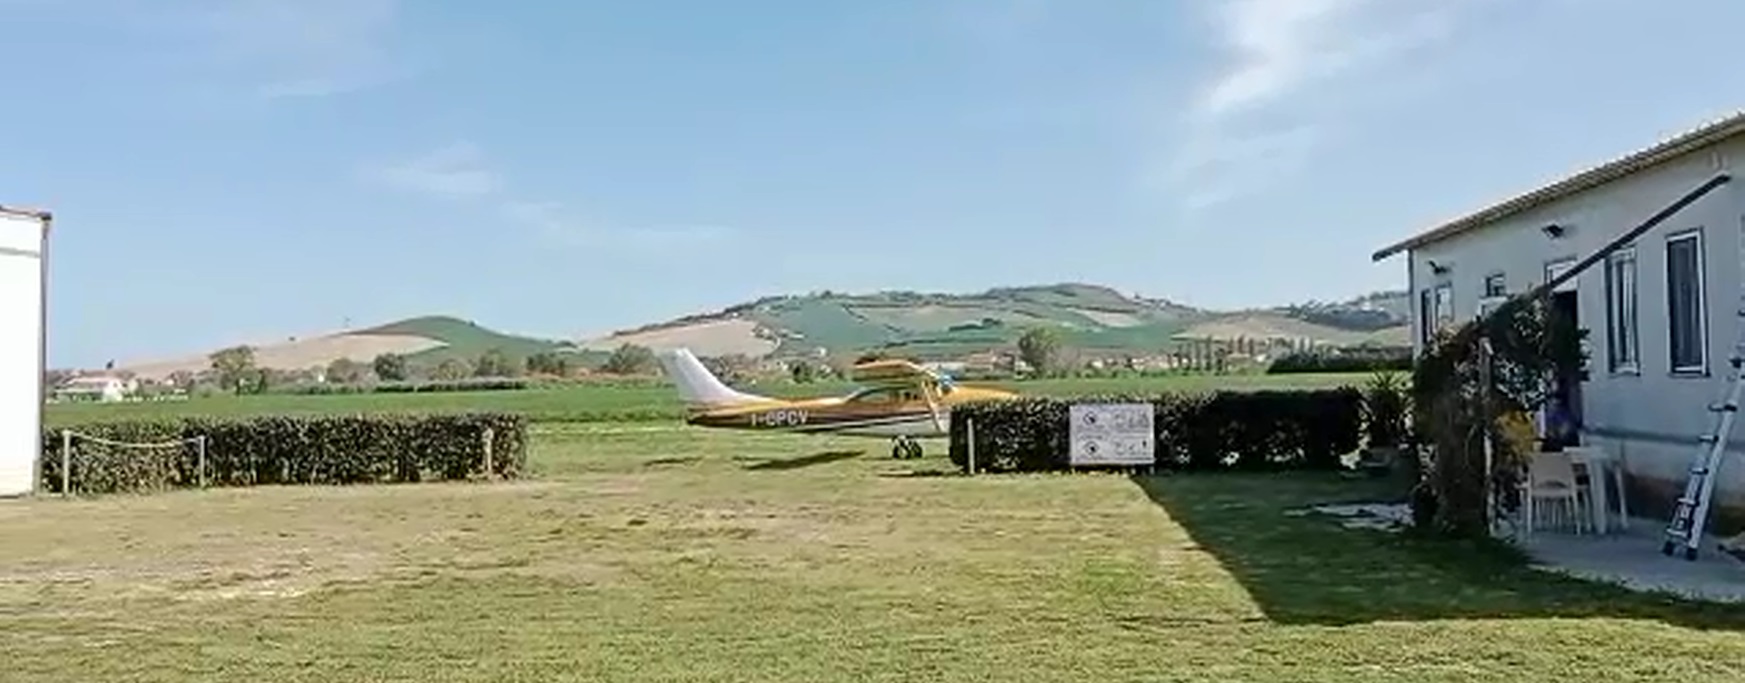 Precipita durante un lancio a San Marco Paludi di Fermo, paracadutista elitrasportato a Torrette